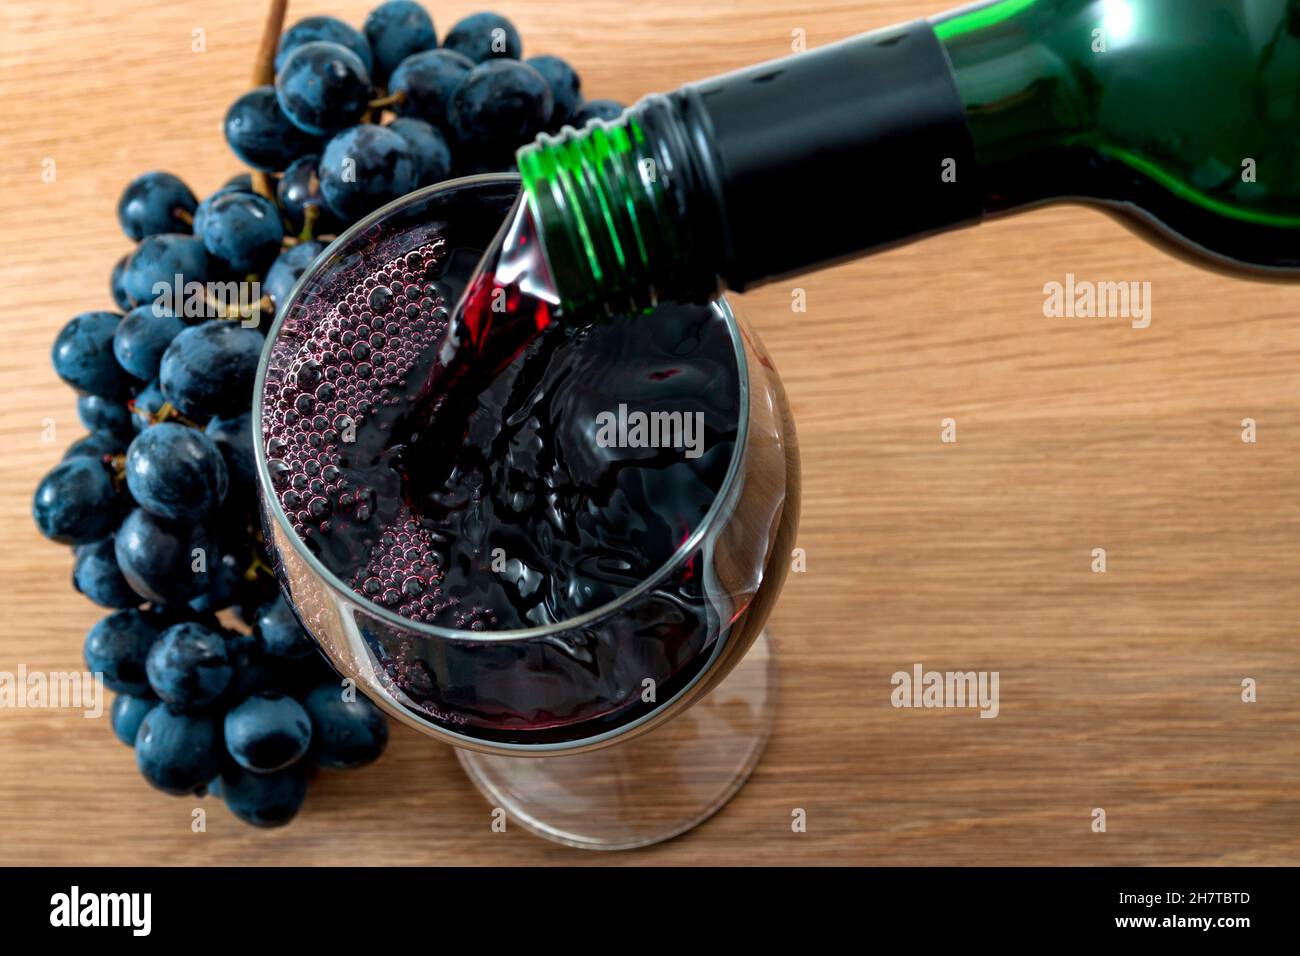 Boisson alcoolisée, fabrication du vin et de l'industrie de l'alcool concept avec vin rouge versé d'une bouteille dans un verre sur une table en bois dans le cadre rustique de Banque D'Images